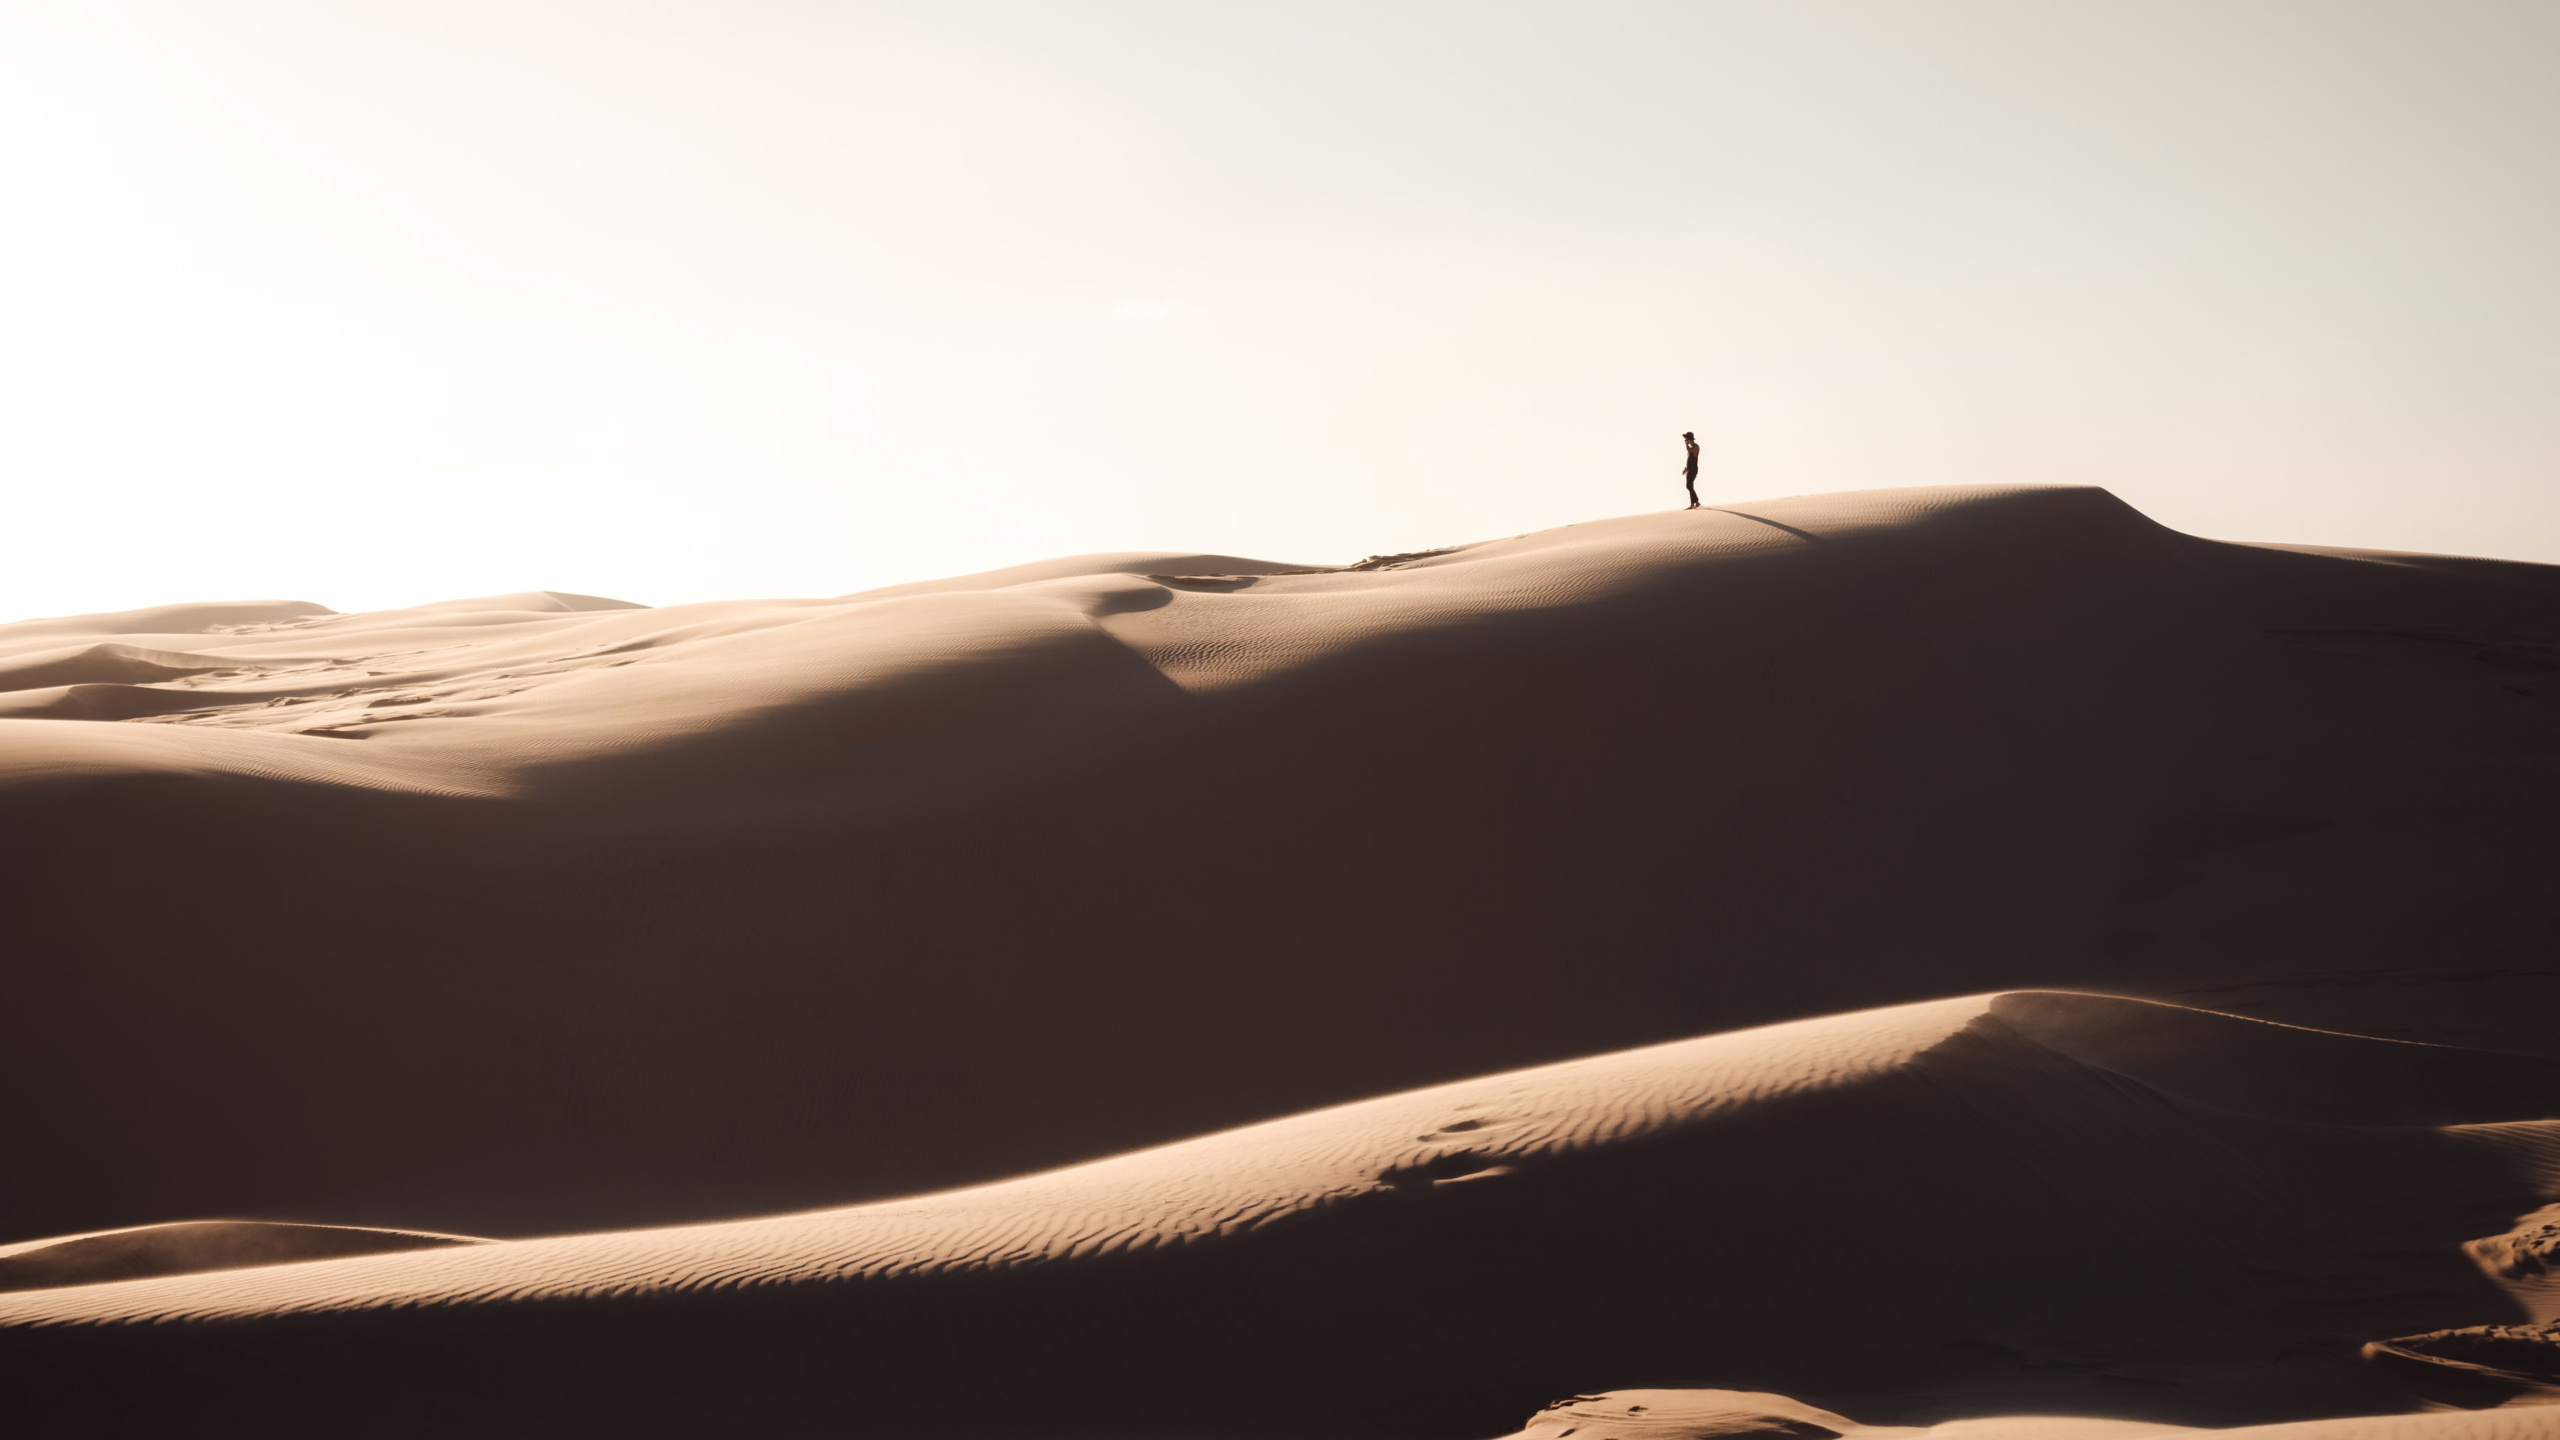 神奇且荒芜的沙漠地带桌面壁纸